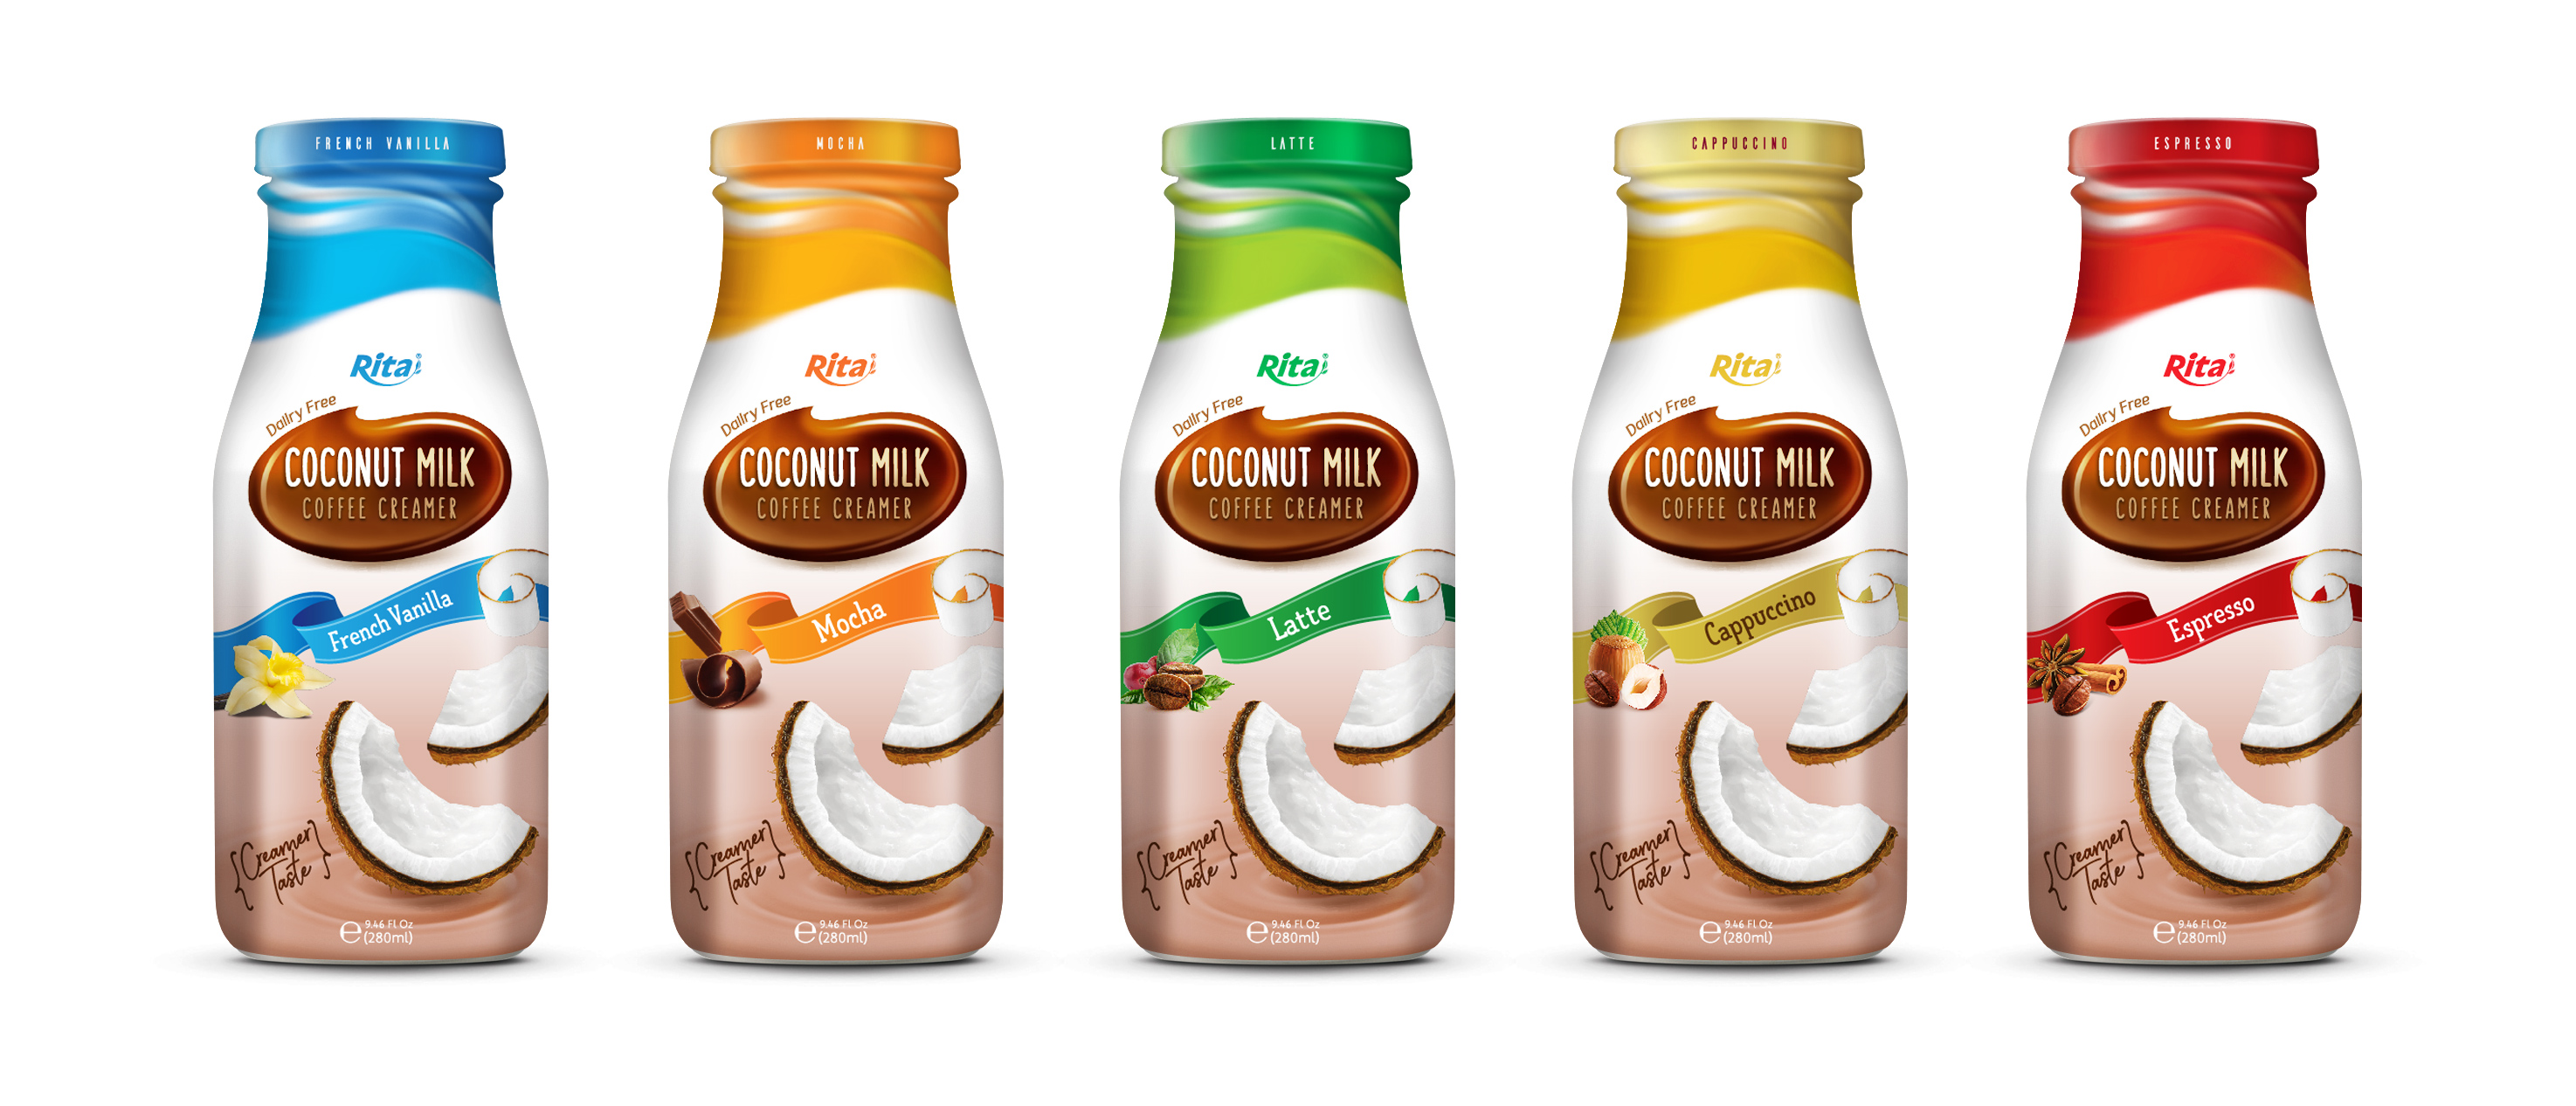 Design Coconut milk Coffee Creamer